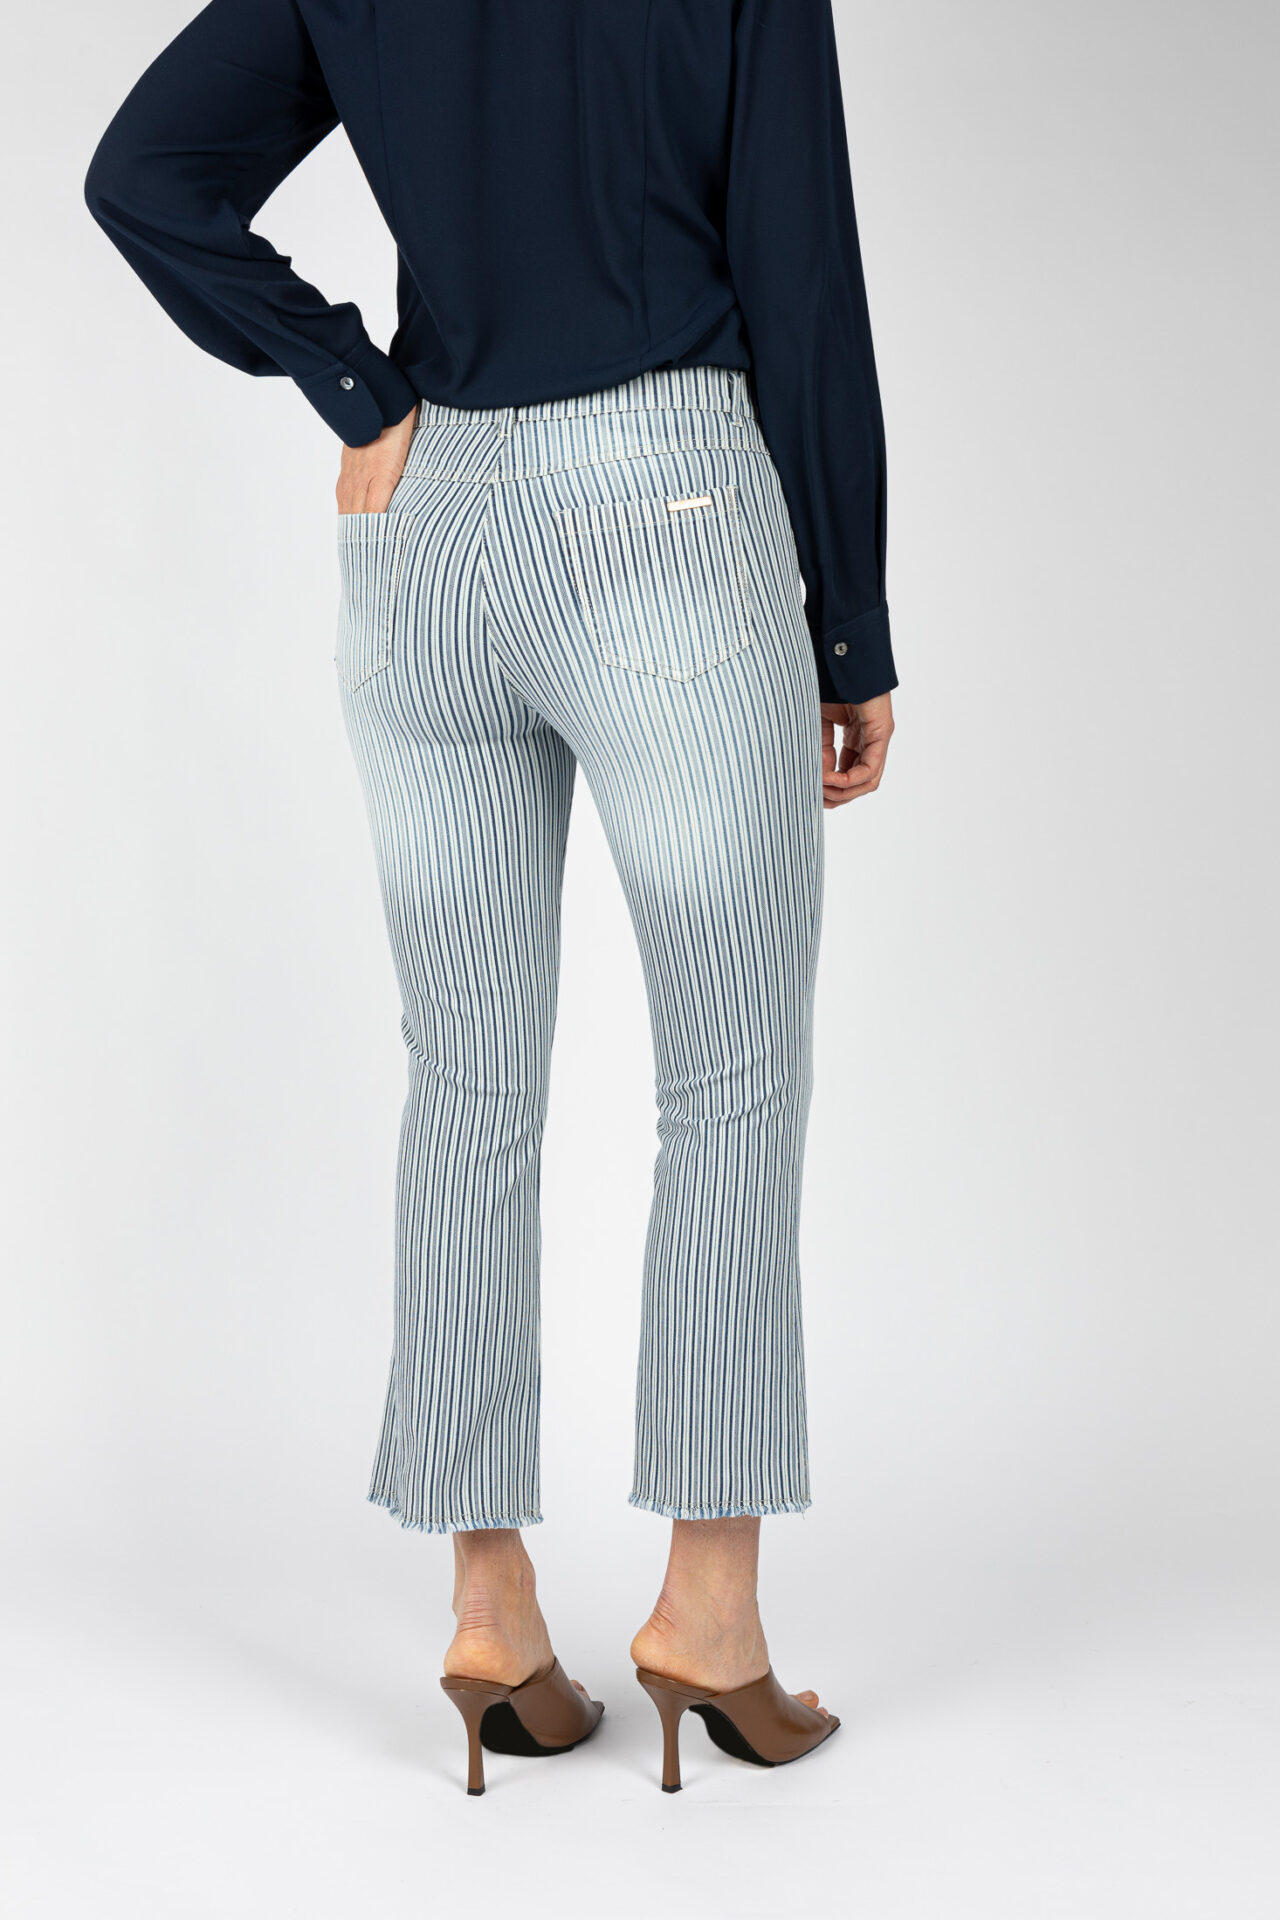 Pantaloni linea Jeans fondo a trombetta tessuto disegno riga colore blu P19946LM - 5